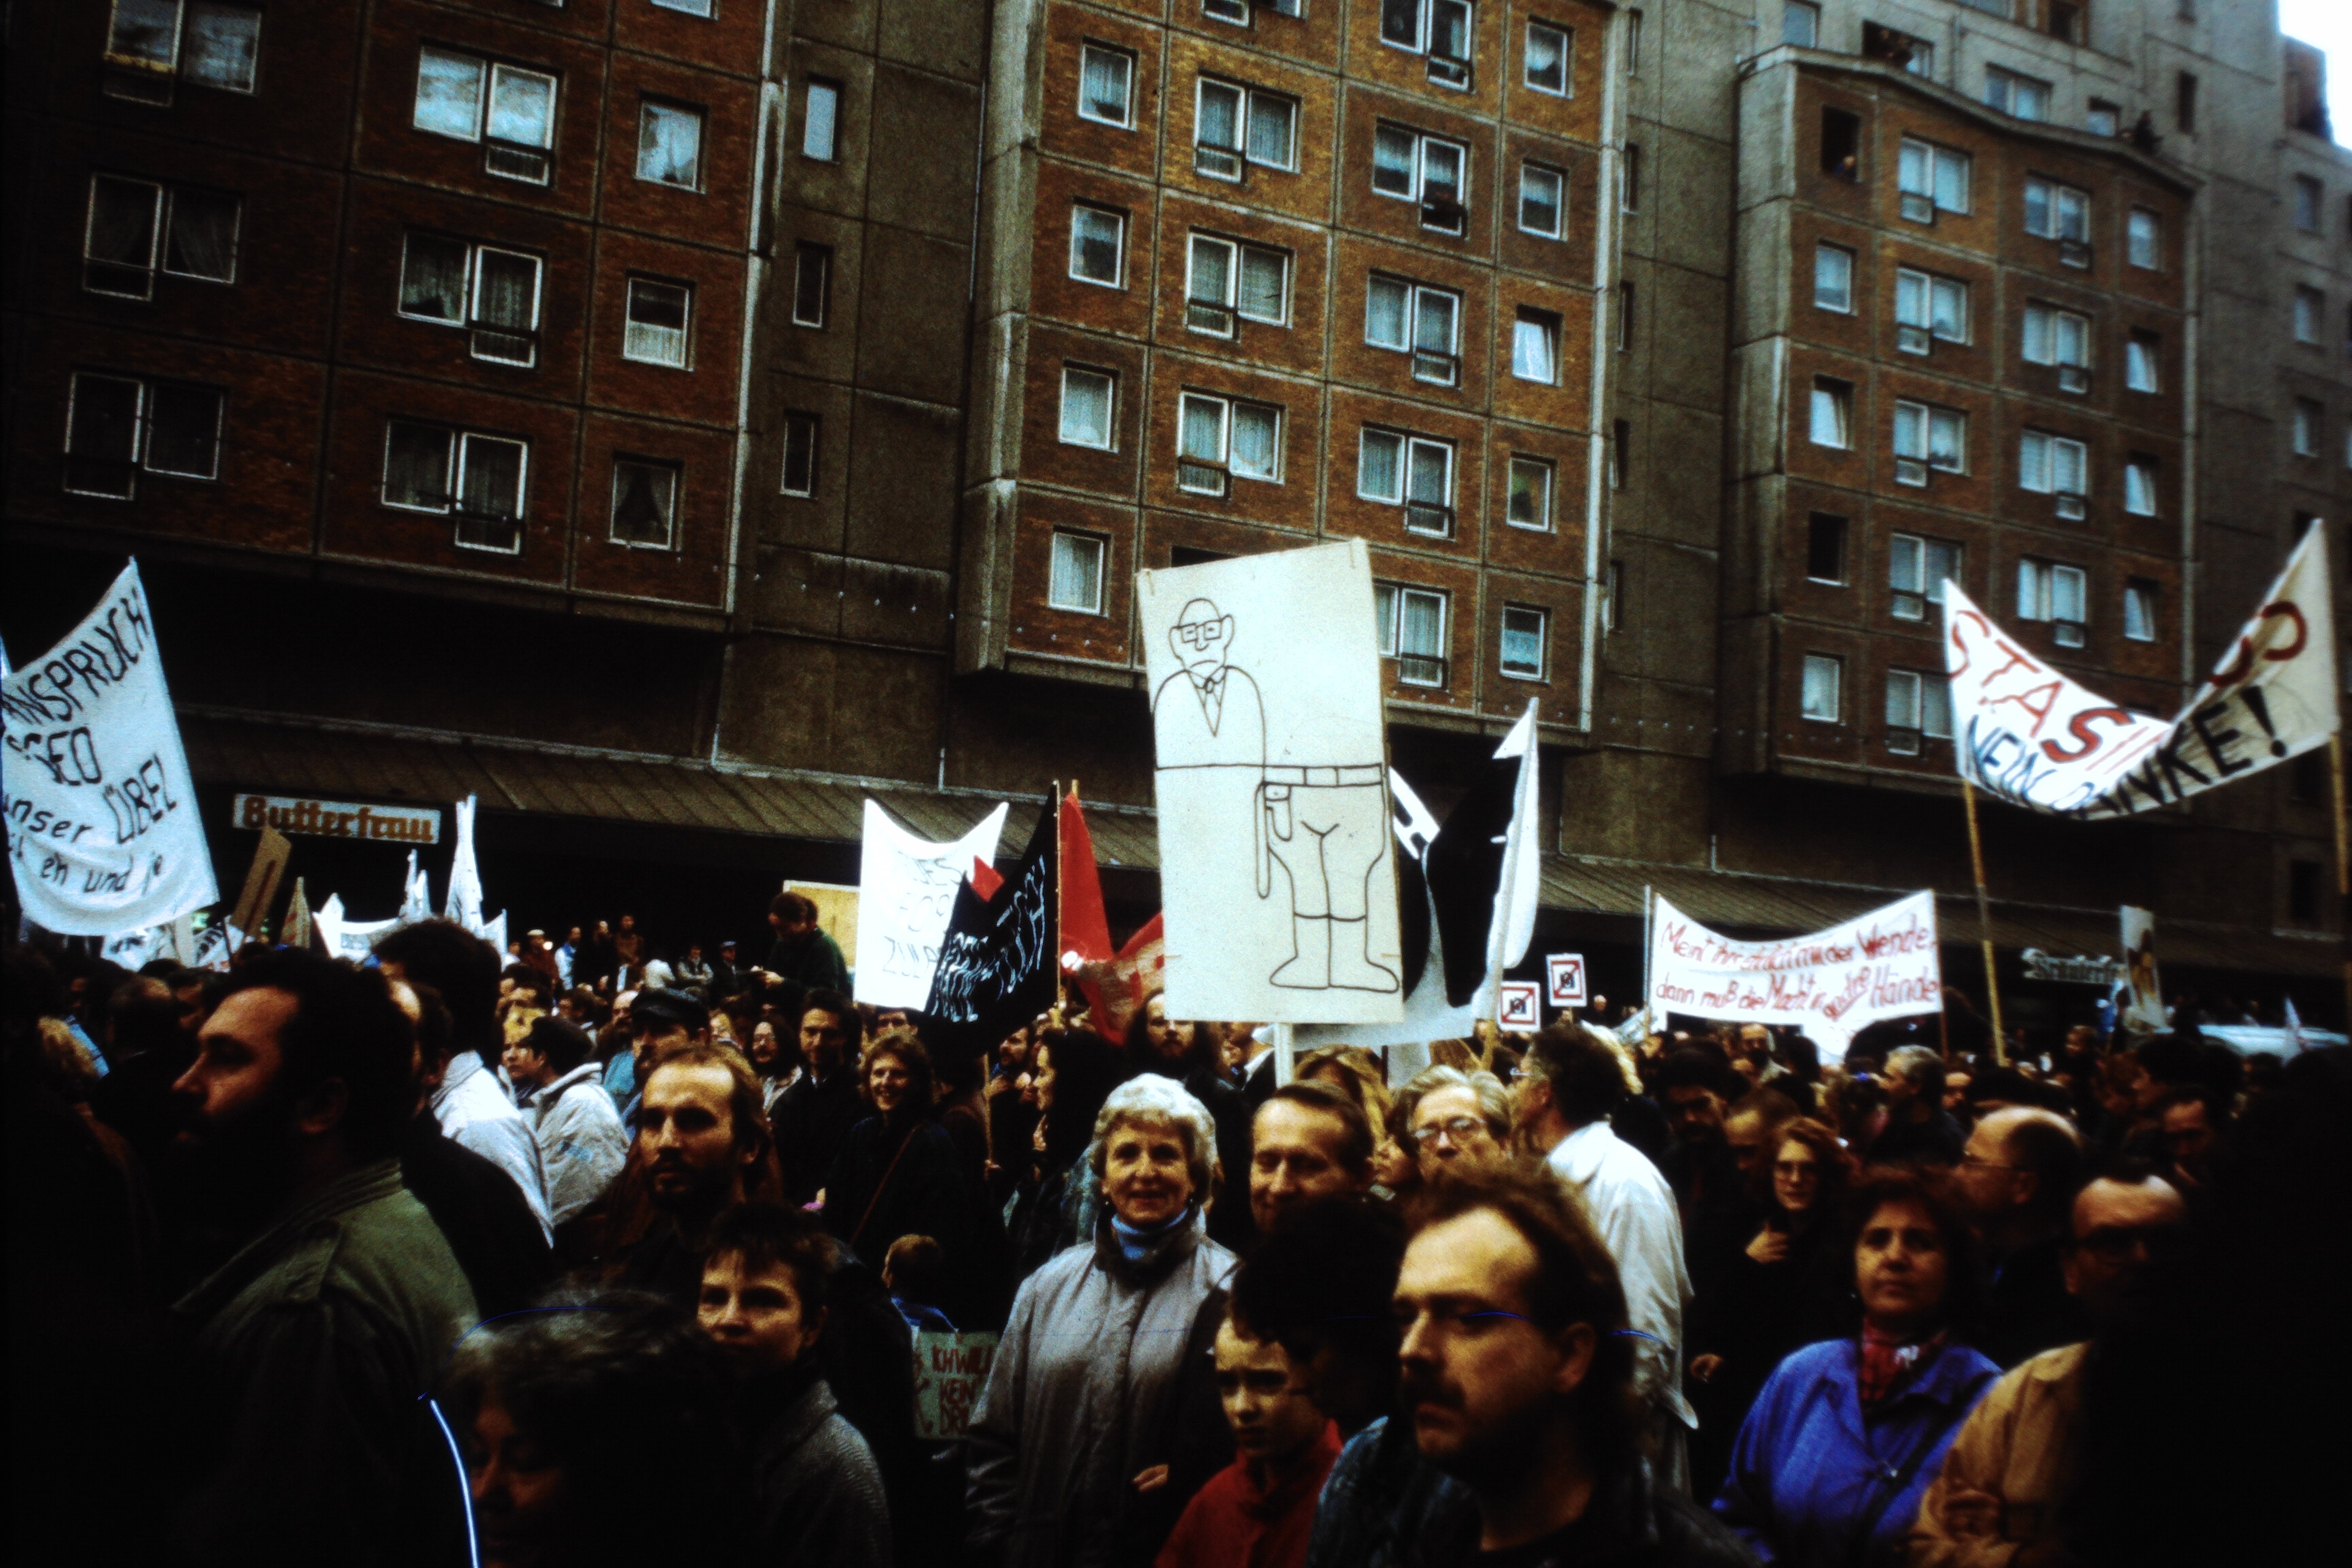 Großdemonstration in Ost-Berlin am 04. November 1989: Demonstrationsteilnehmer mit Plakaten und Transparenten (DDR Geschichtsmuseum im Dokumentationszentrum Perleberg CC BY-SA)